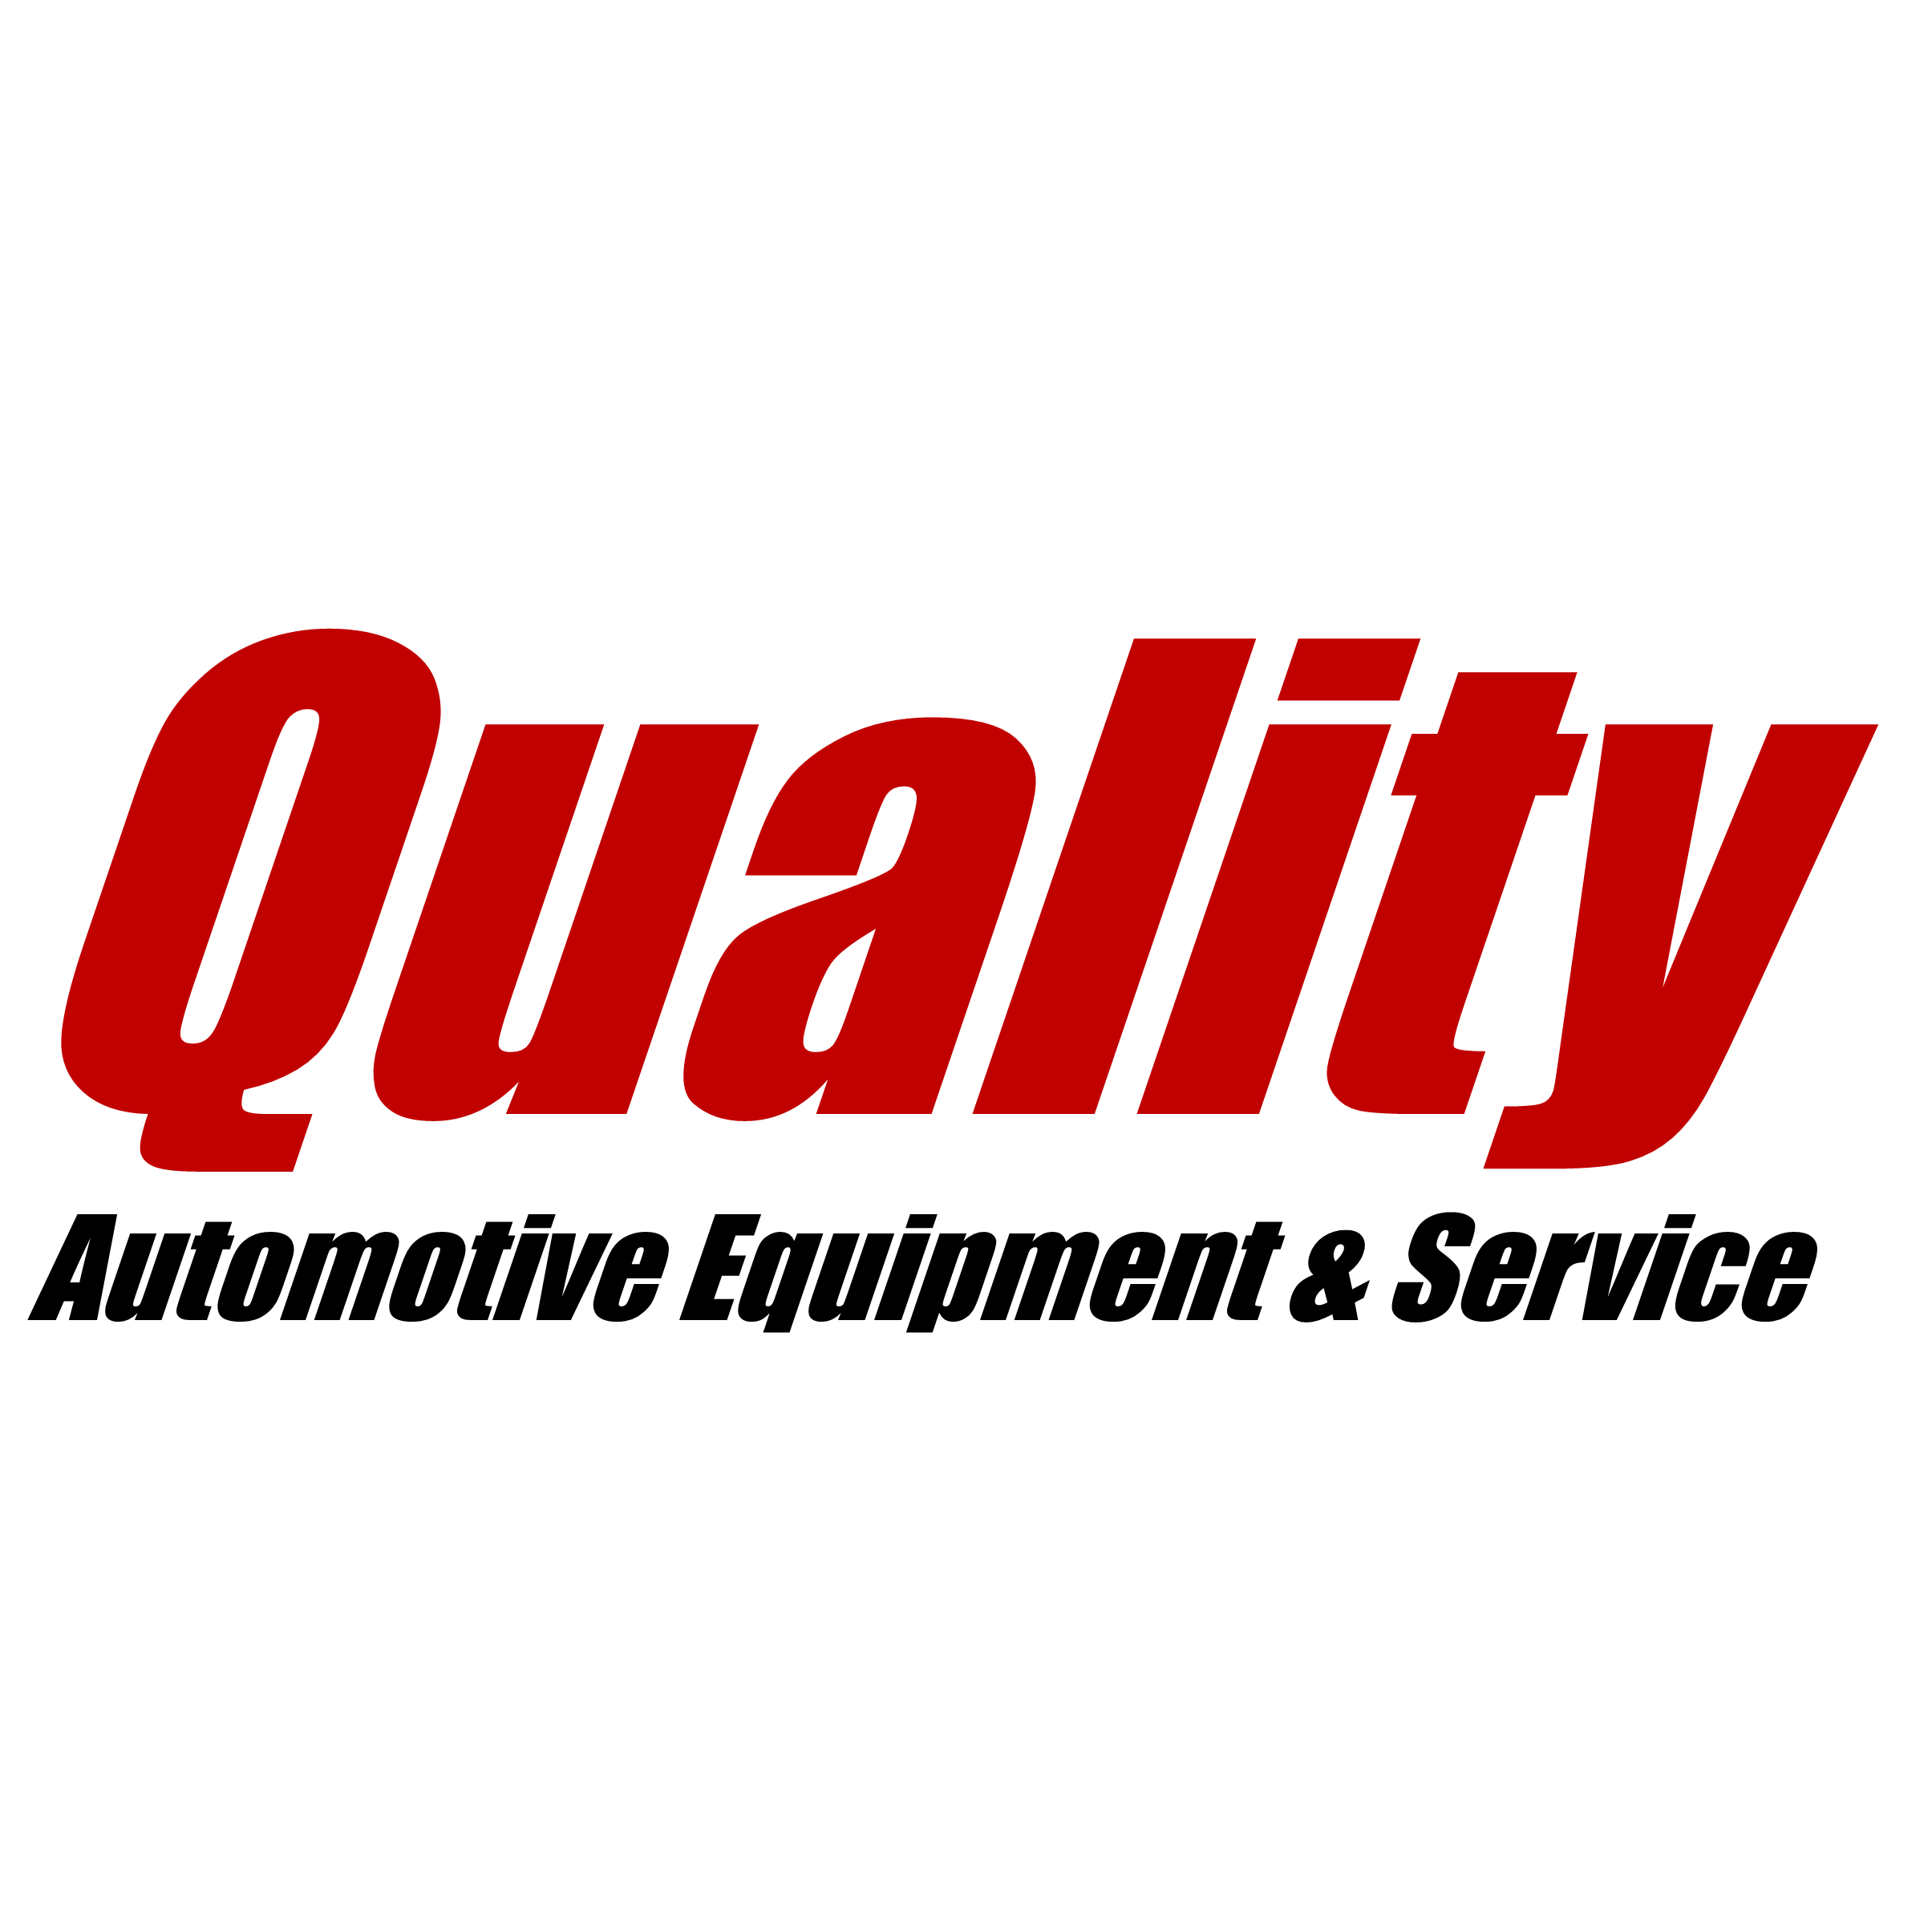 Quality Automotive Equipment & Service - Paola, KS 66071 - (913)205-1350 | ShowMeLocal.com